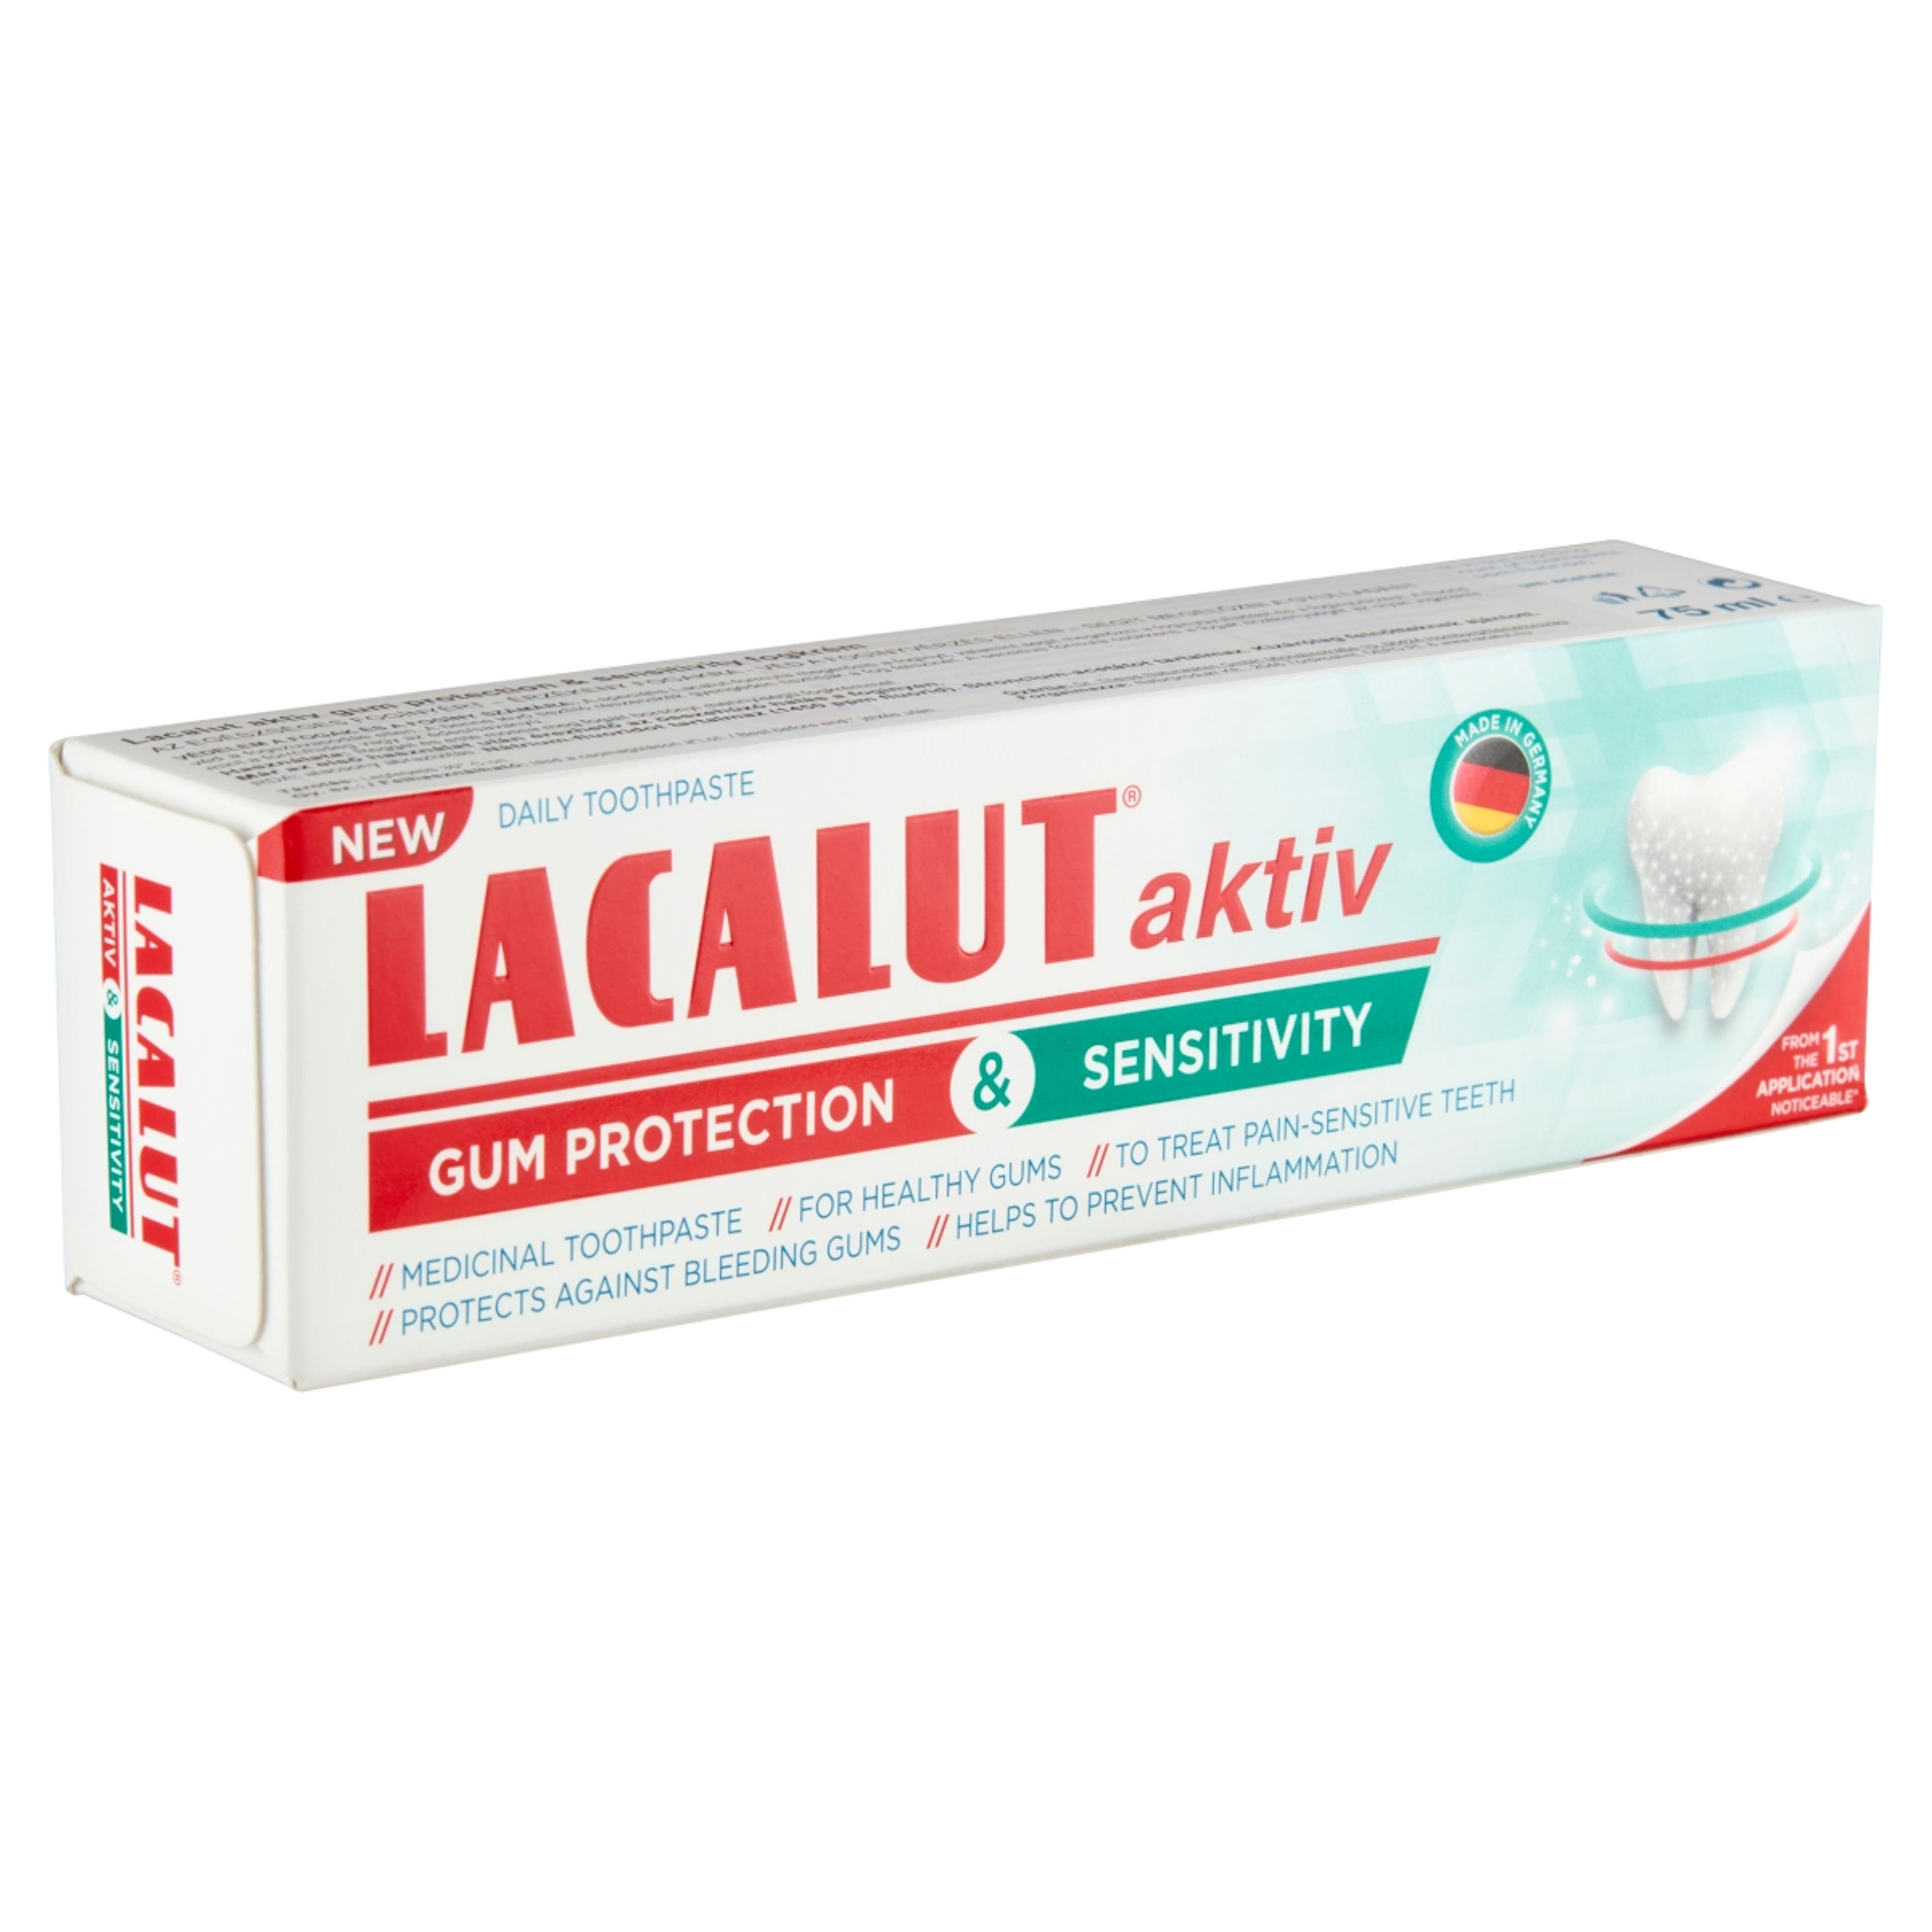 Lacalut Aktiv Gum Protection&Sensitivity fogkrém - 75 ml-4